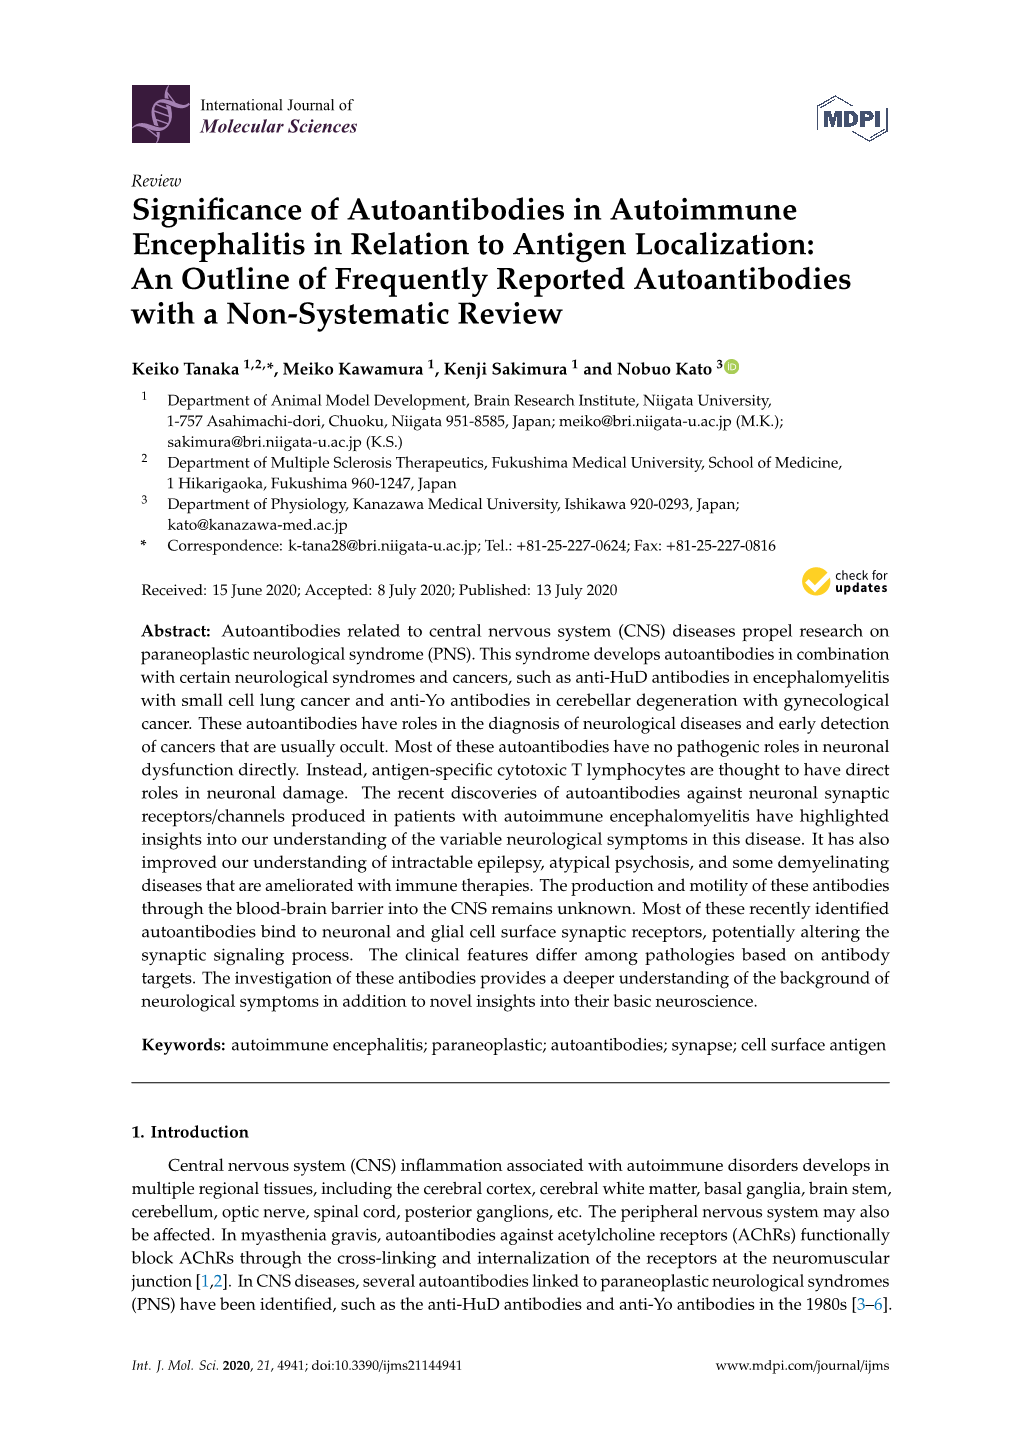 Significance of Autoantibodies in Autoimmune Encephalitis In